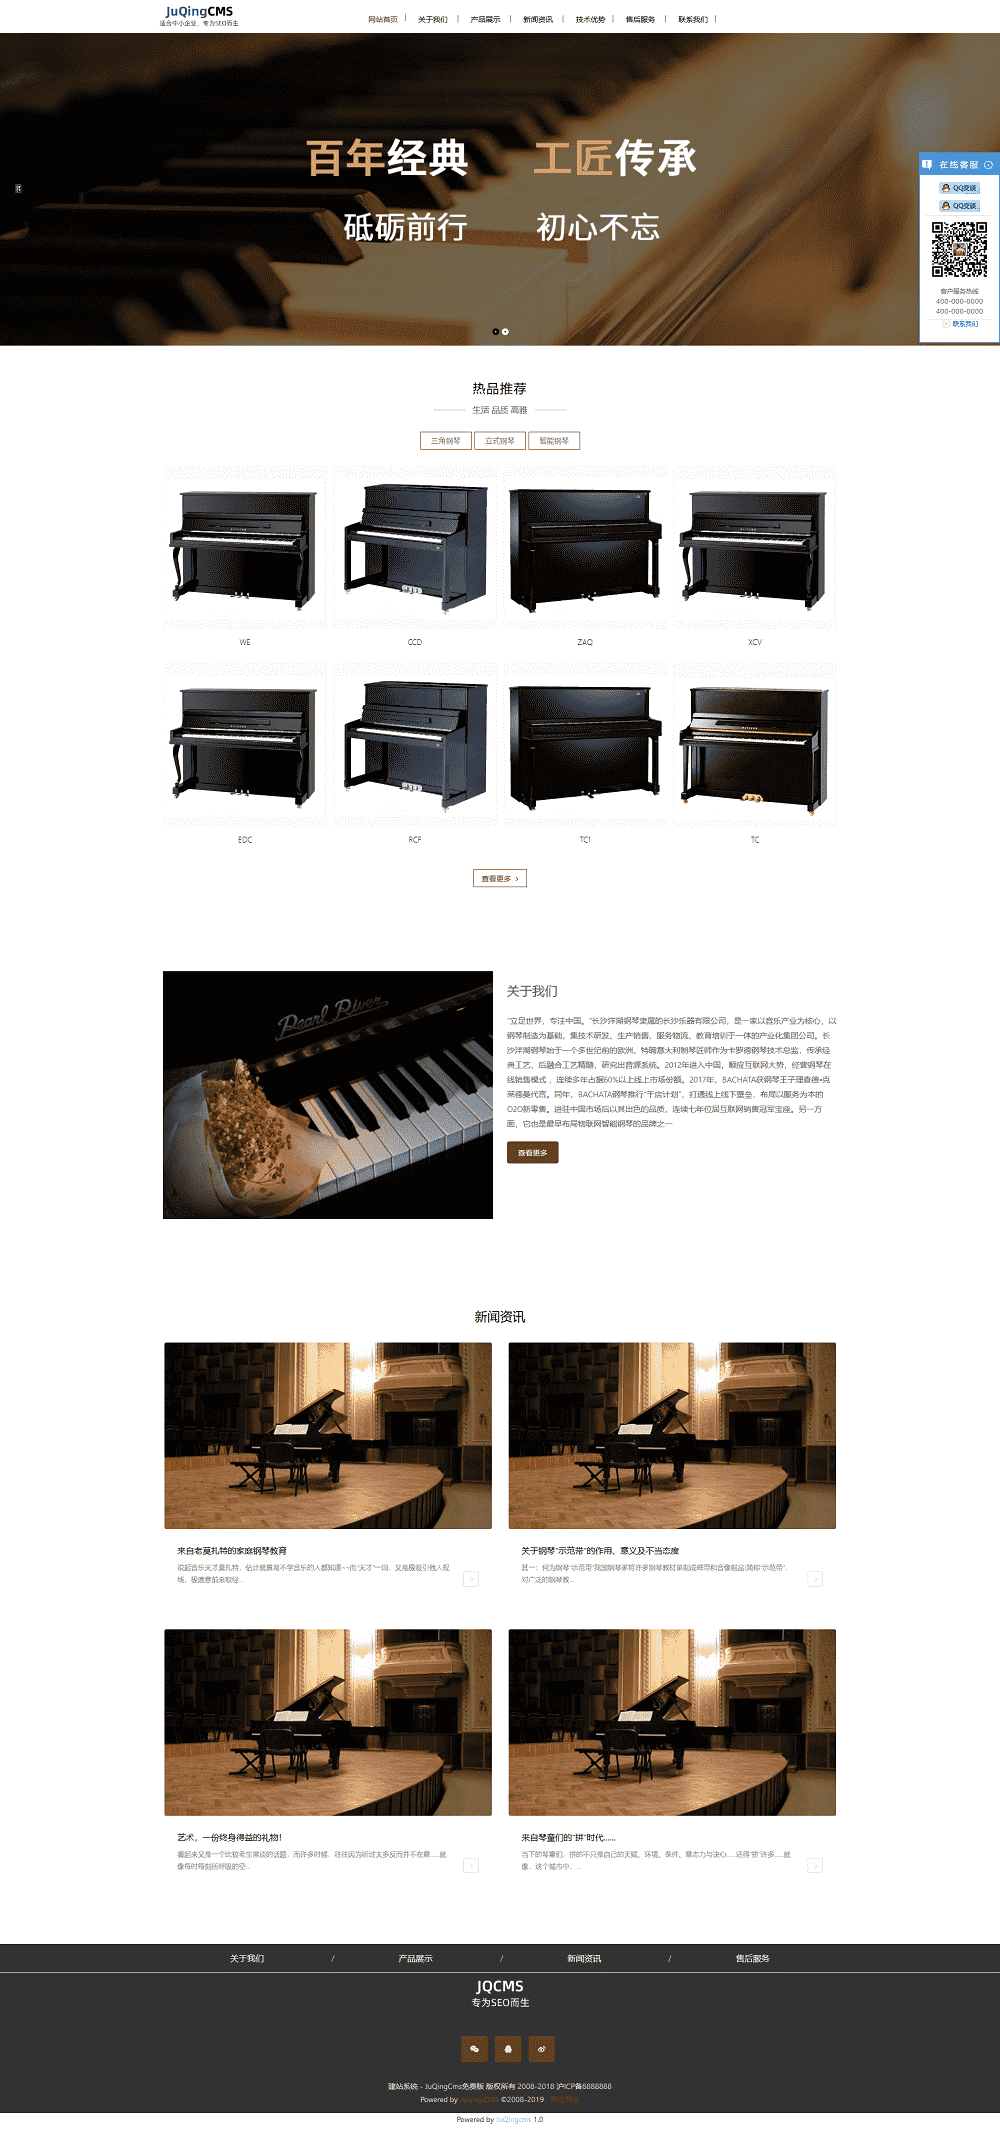 钢琴制造商网站模板，钢琴网站模板，钢琴网站建设，网站建设源码，免费网站建设